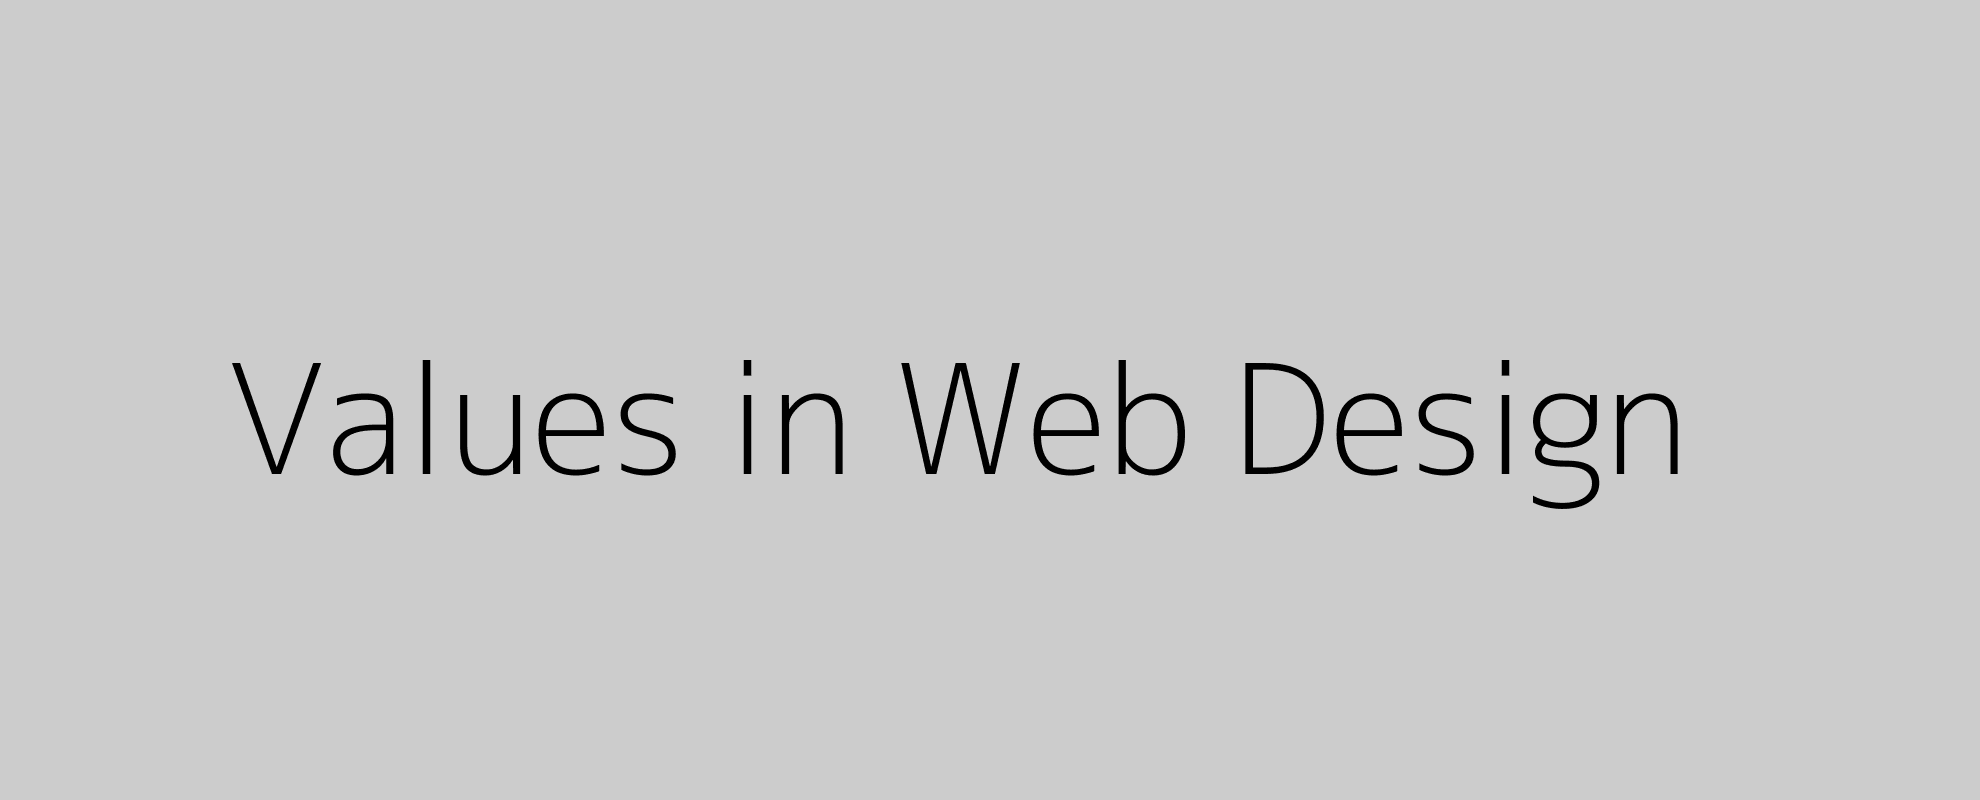 Values in Web Design